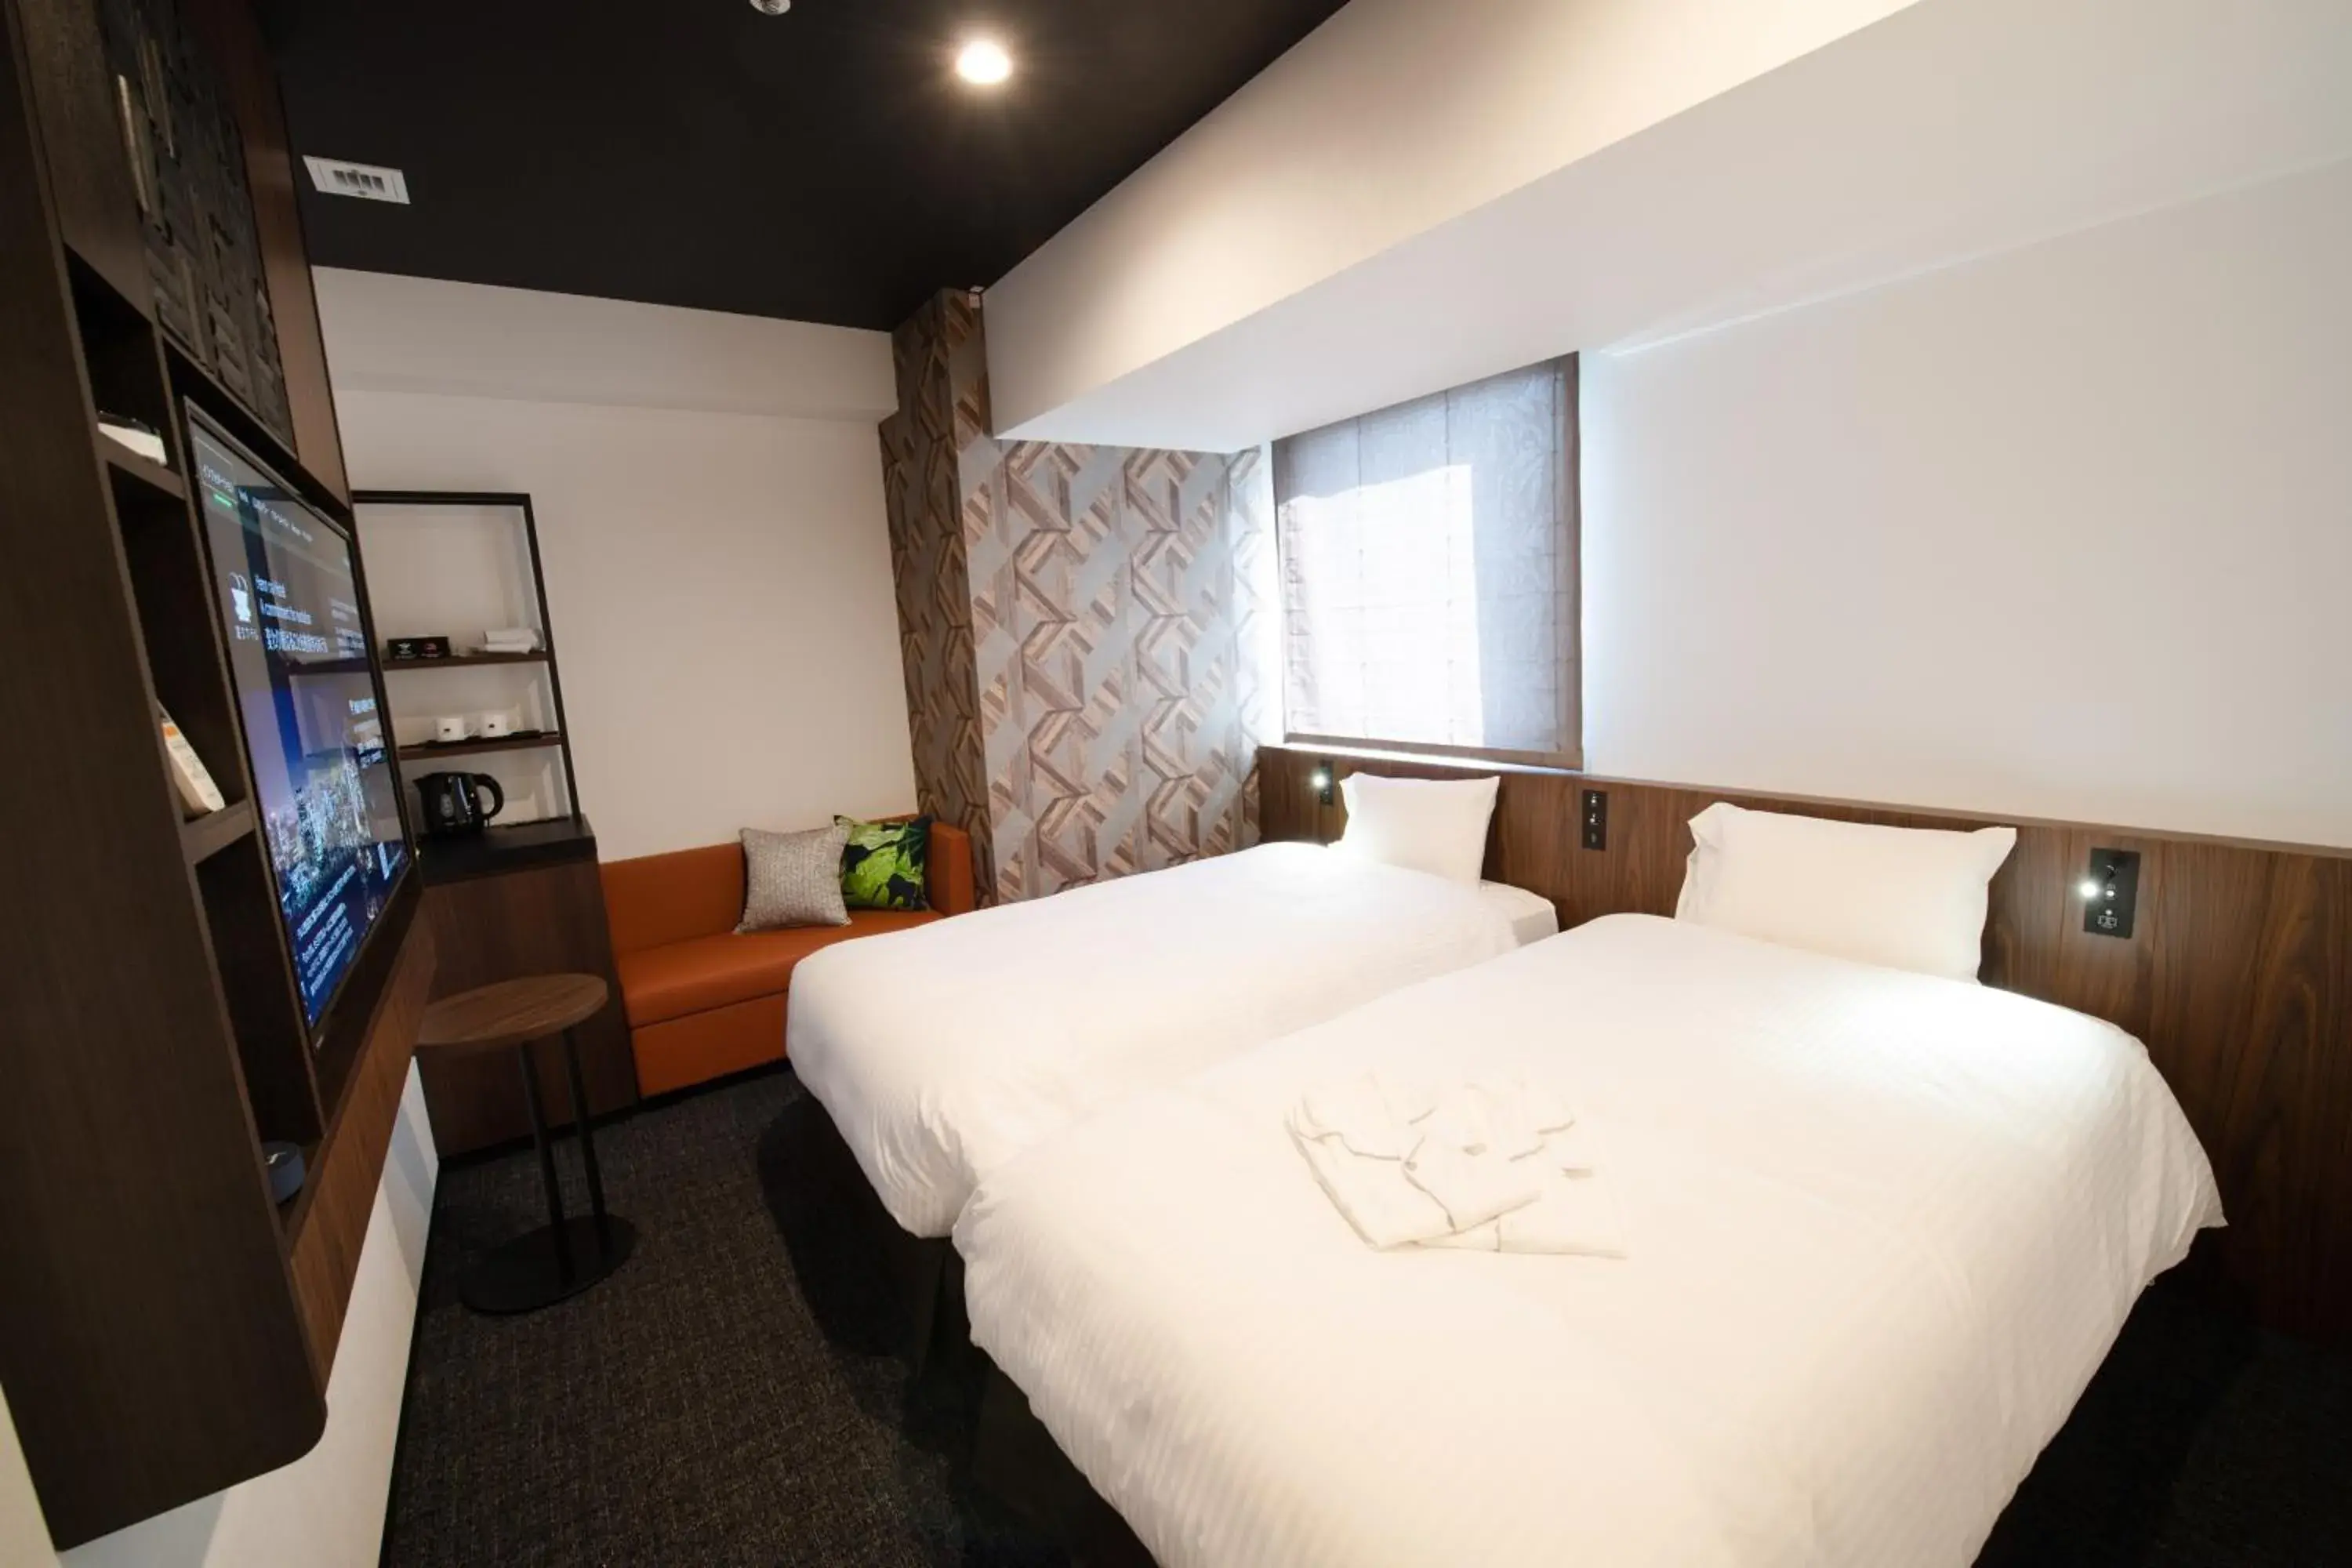 Standard Twin Room - single occupancy - Non-Smoking in Henn na Hotel Tokyo Akasaka